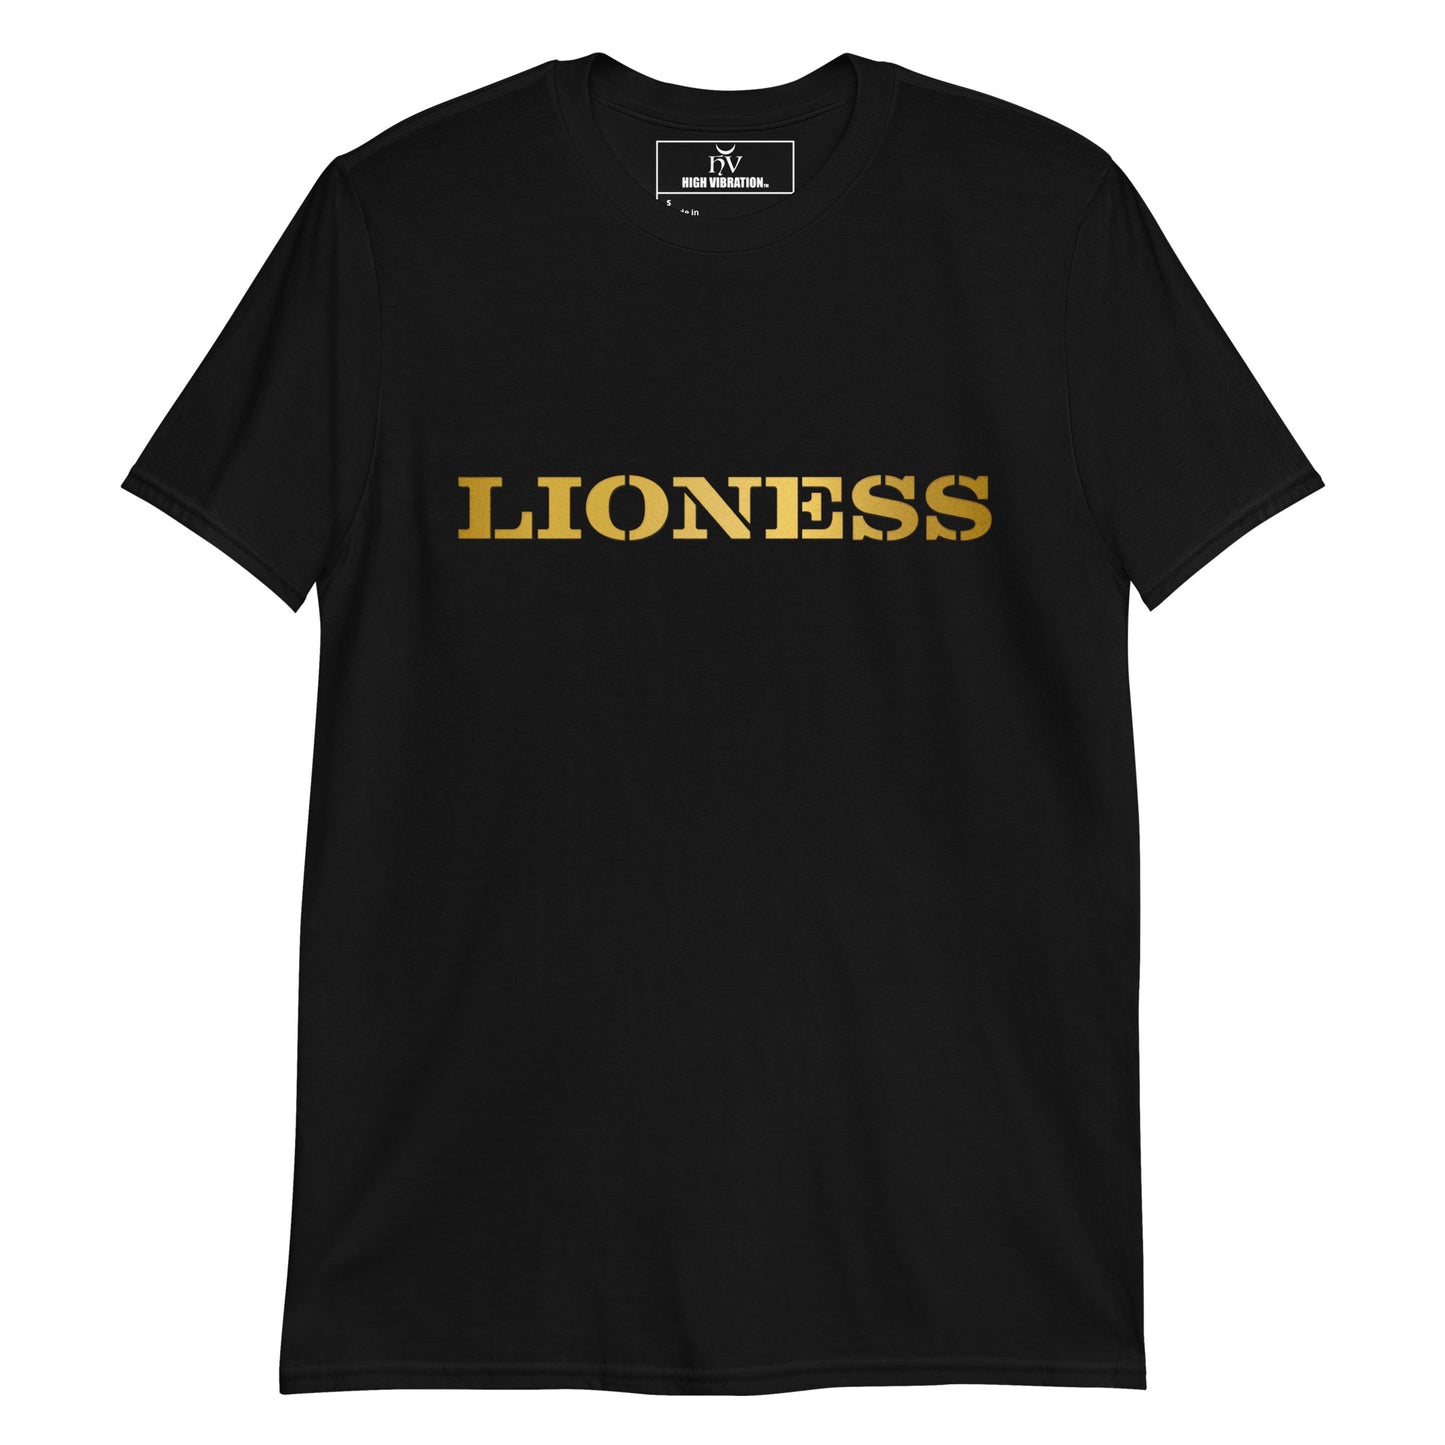 Lioness- Unisex T-Shirt